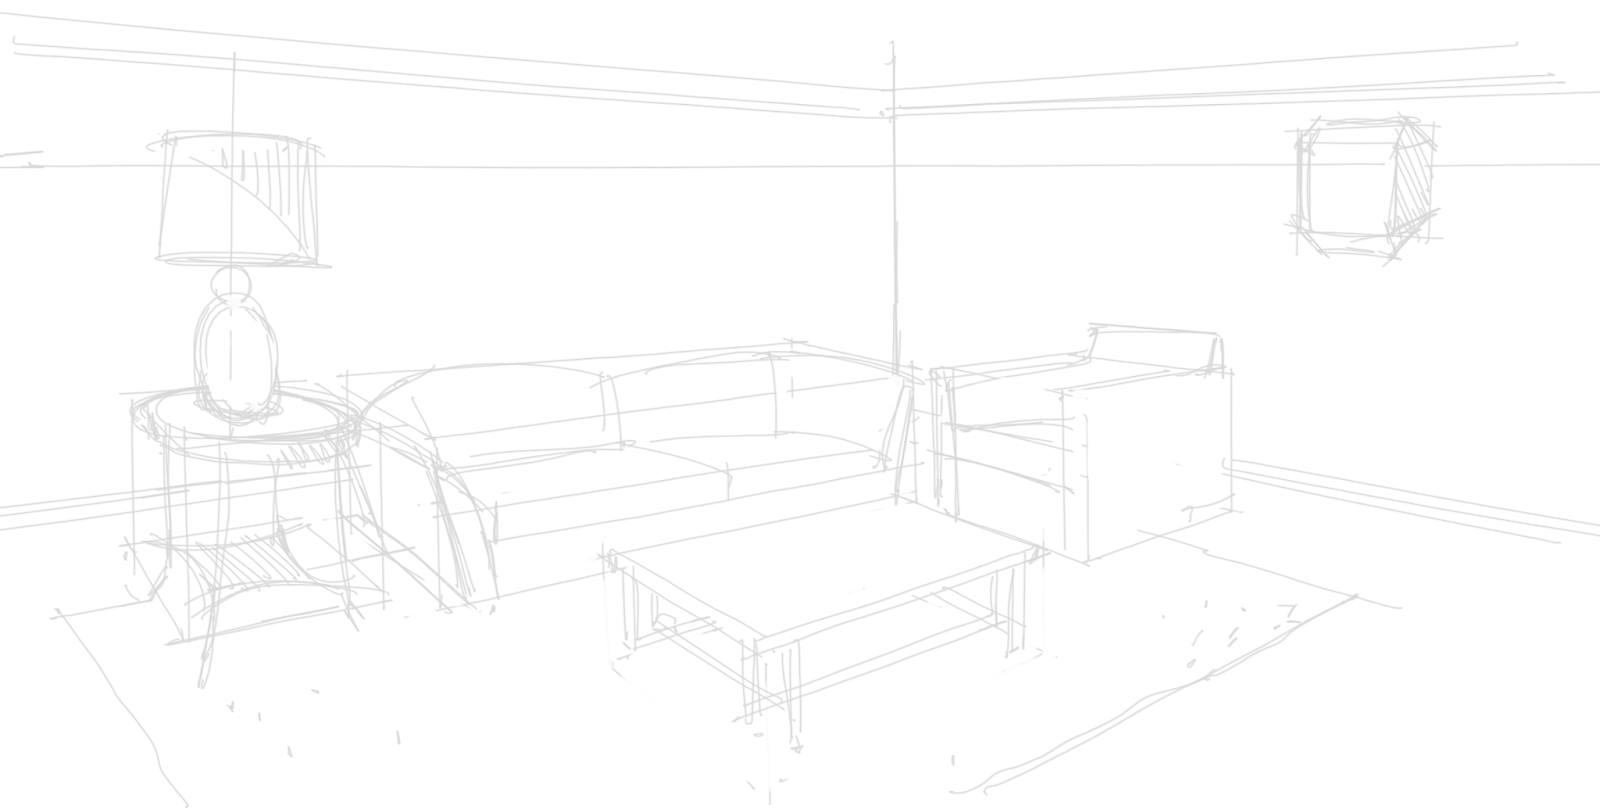 Living Room Sketch 1 Bai Interiors Homewares